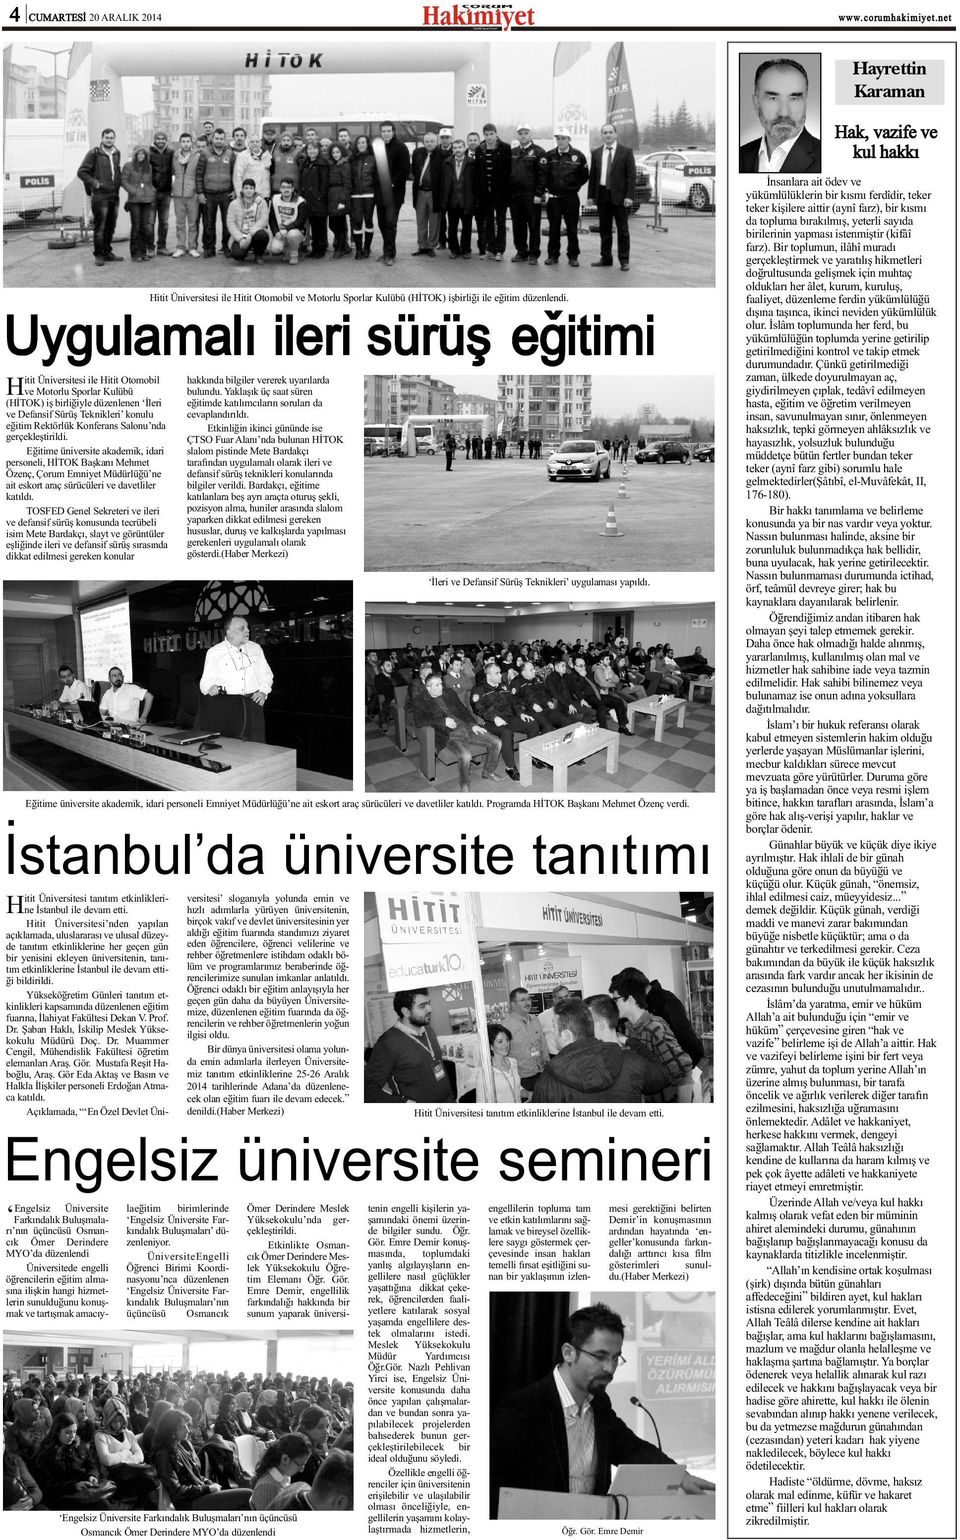 Eðitime üniversite akademik, idari personeli, HÝTOK Baþkaný Mehmet Özenç, Çorum Emniyet Müdürlüðü ne ait eskort araç sürücüleri ve davetliler katýldý.